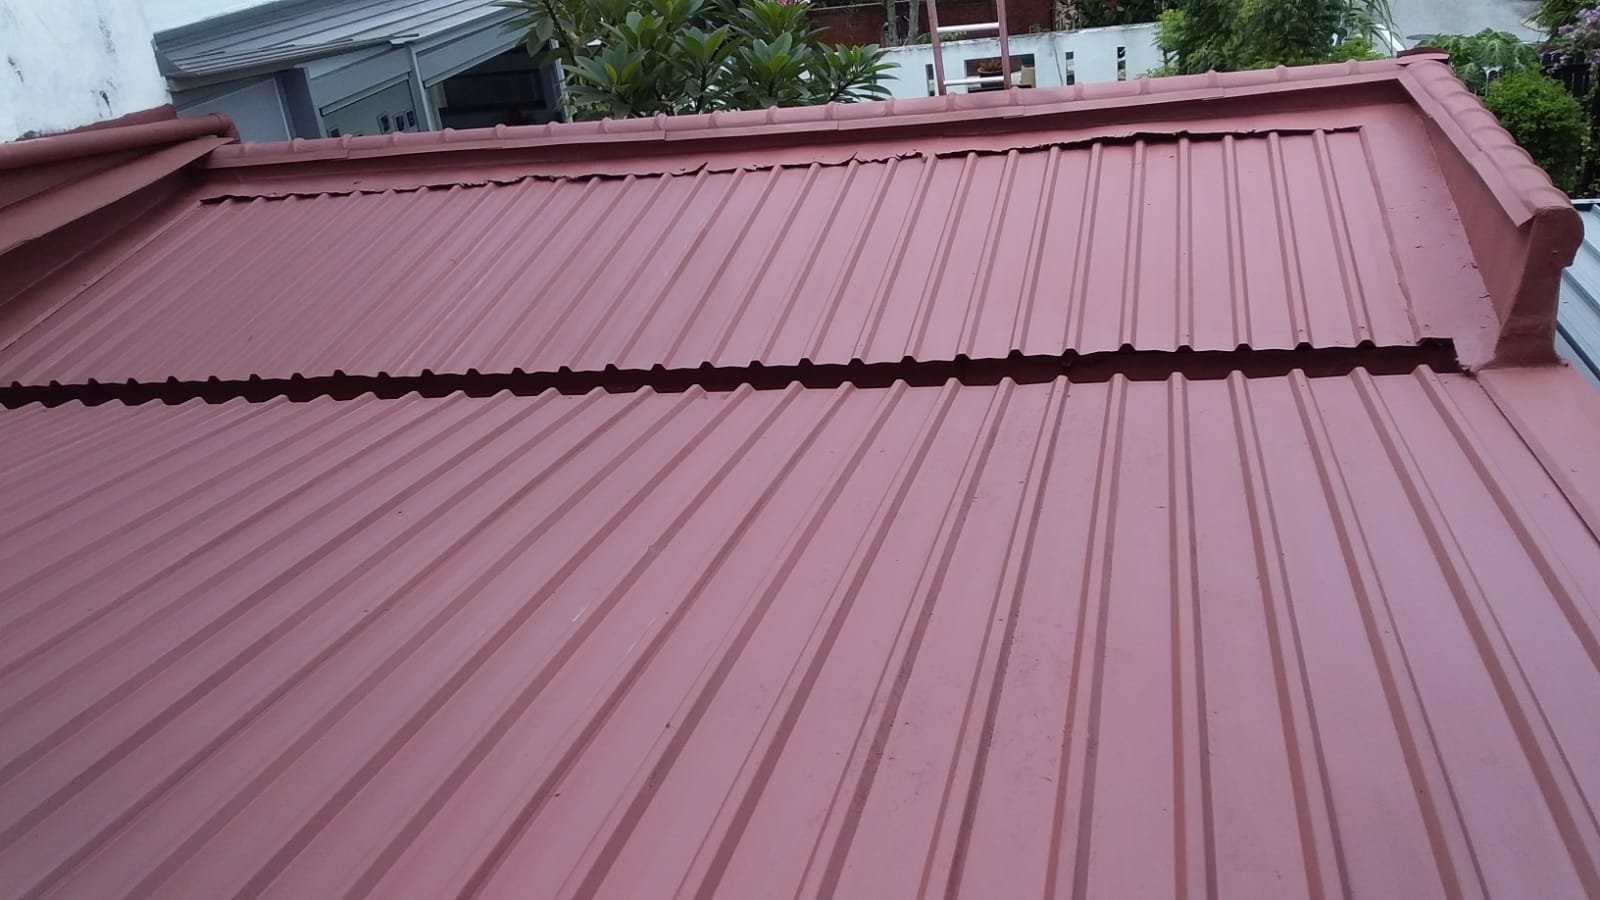 Waterproofing a metal roof